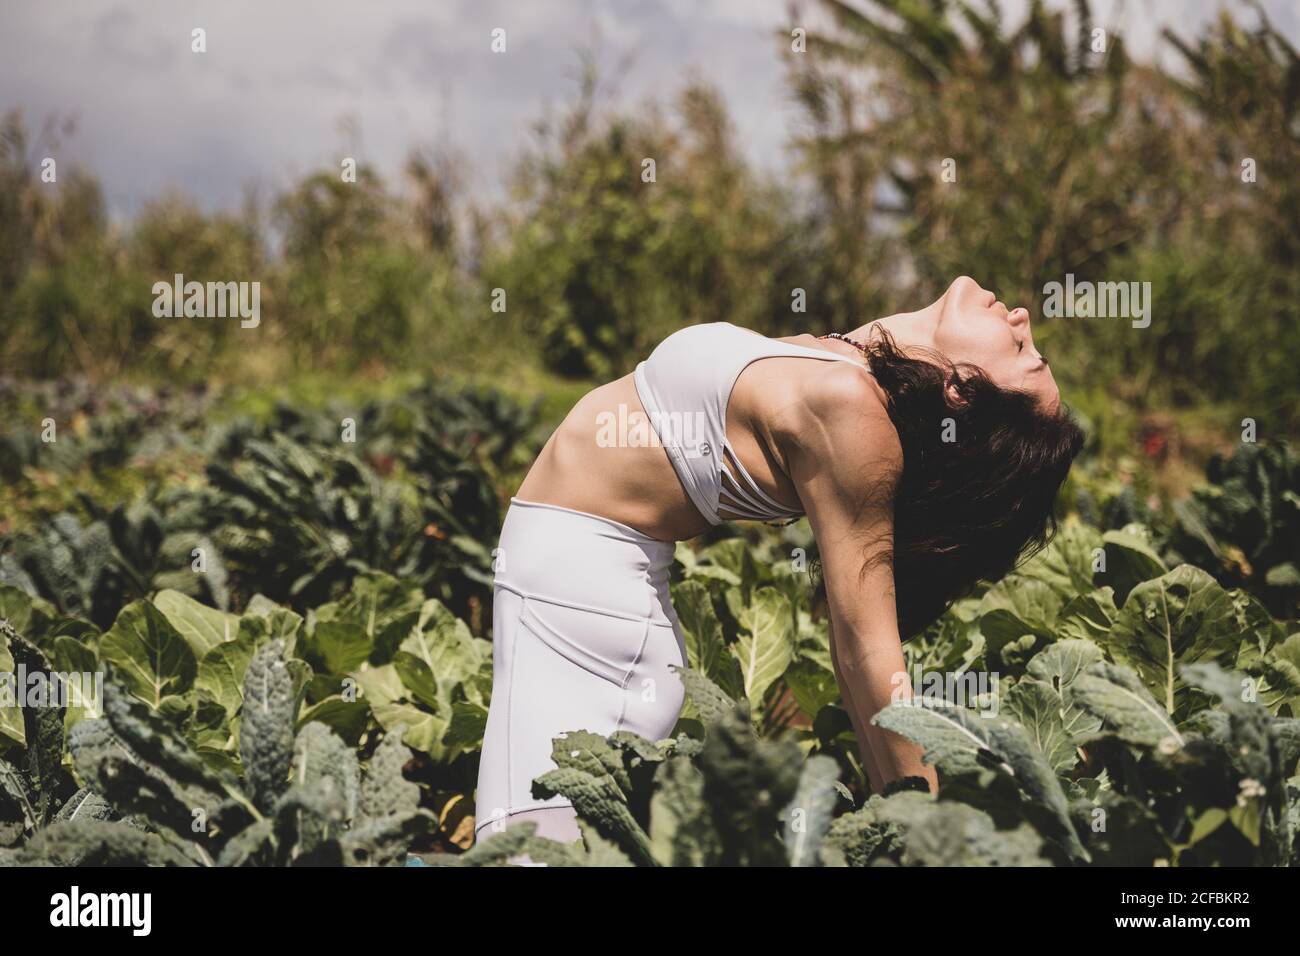 Female yogi backbends in a field Stock Photo